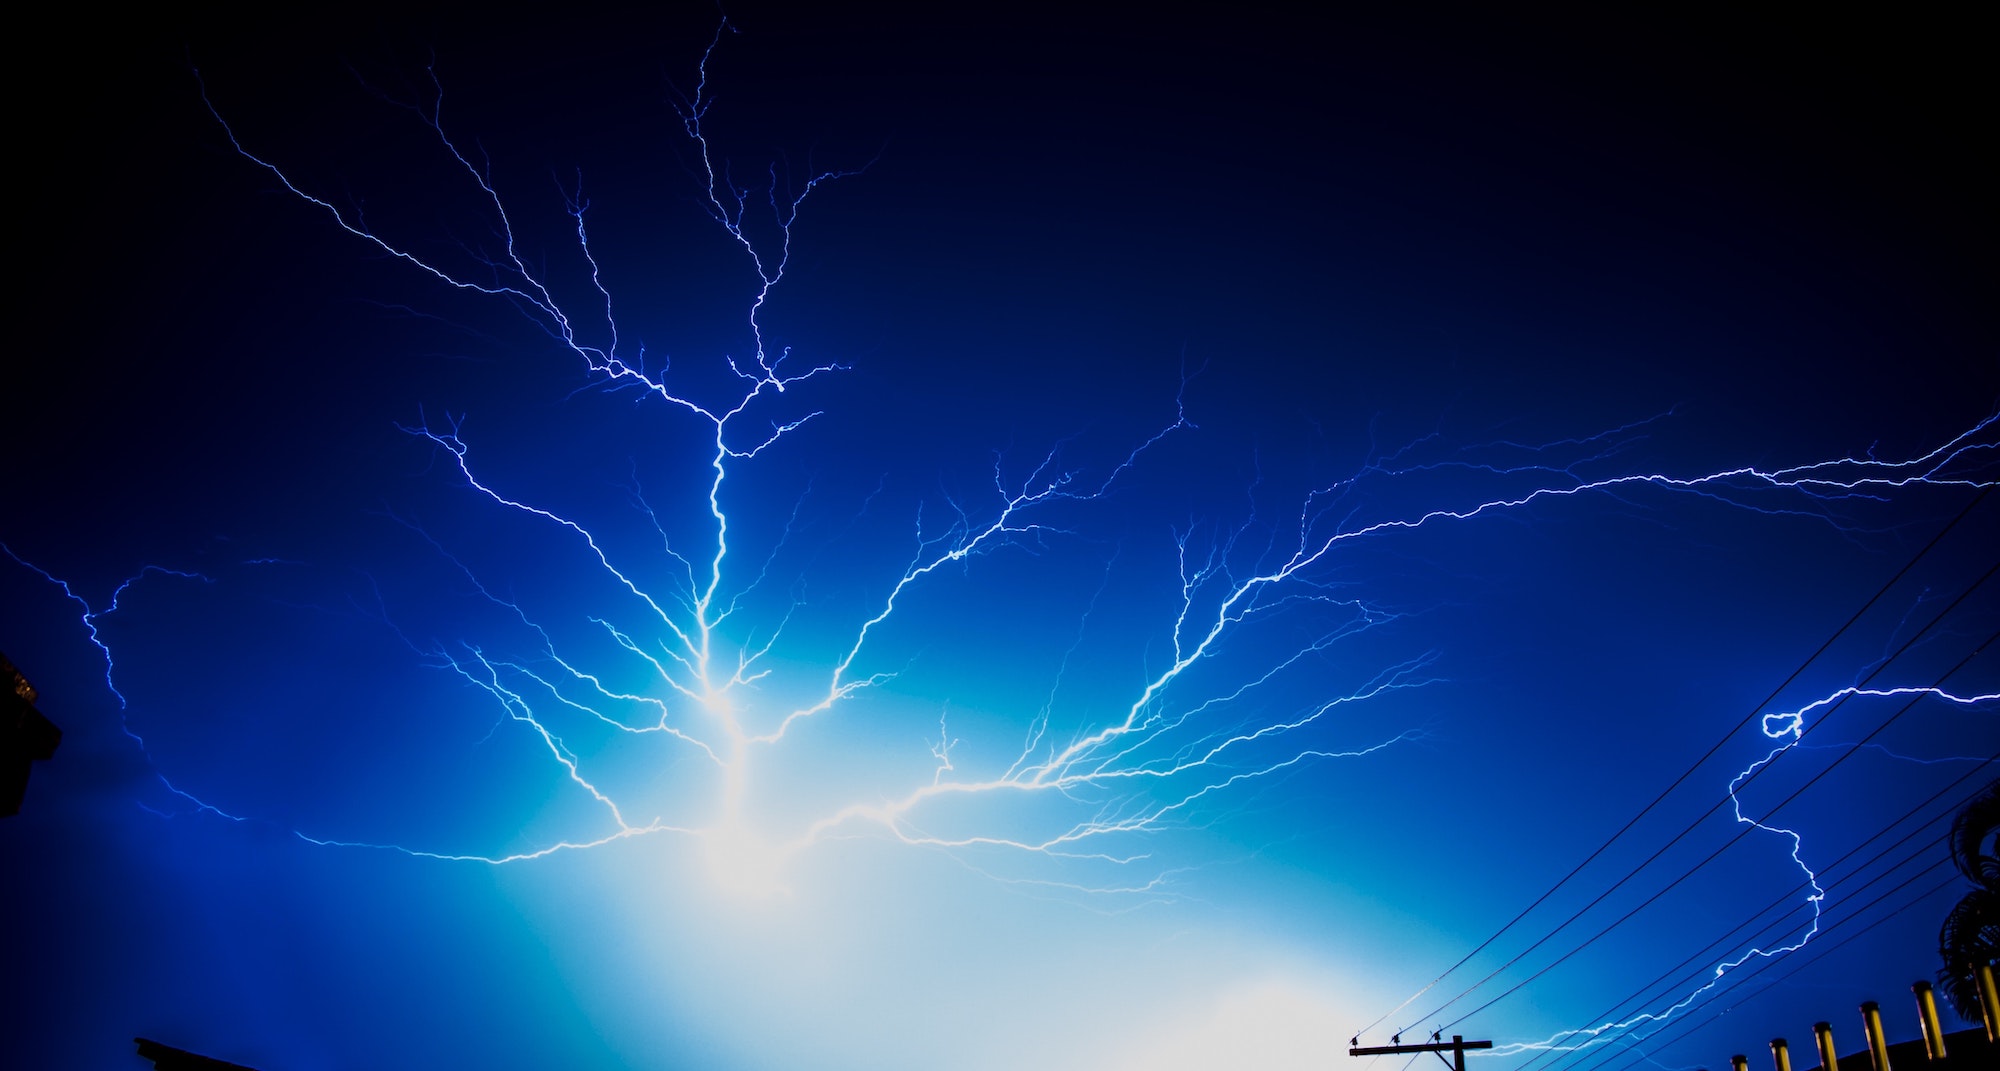 Lightning streaking acorss the sky